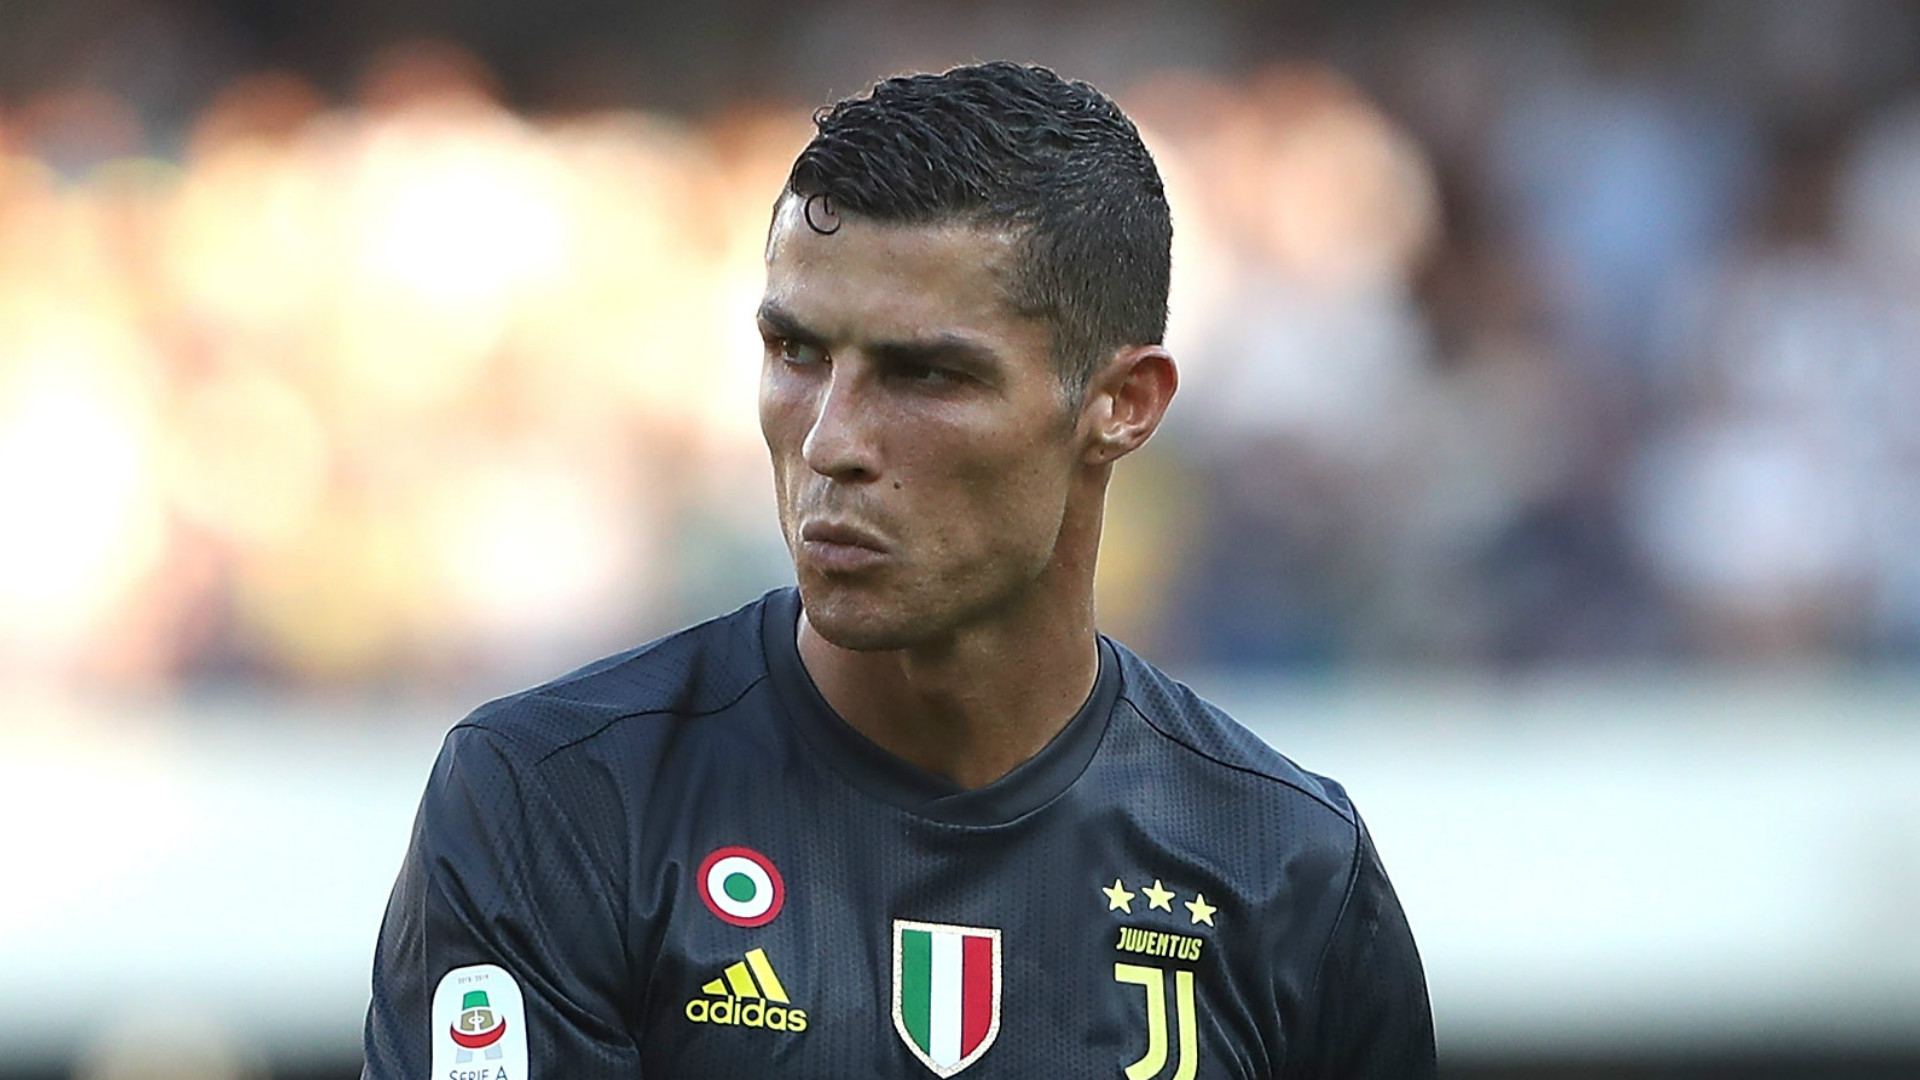   Cristiano Ronaldo Juventus 2018-19 